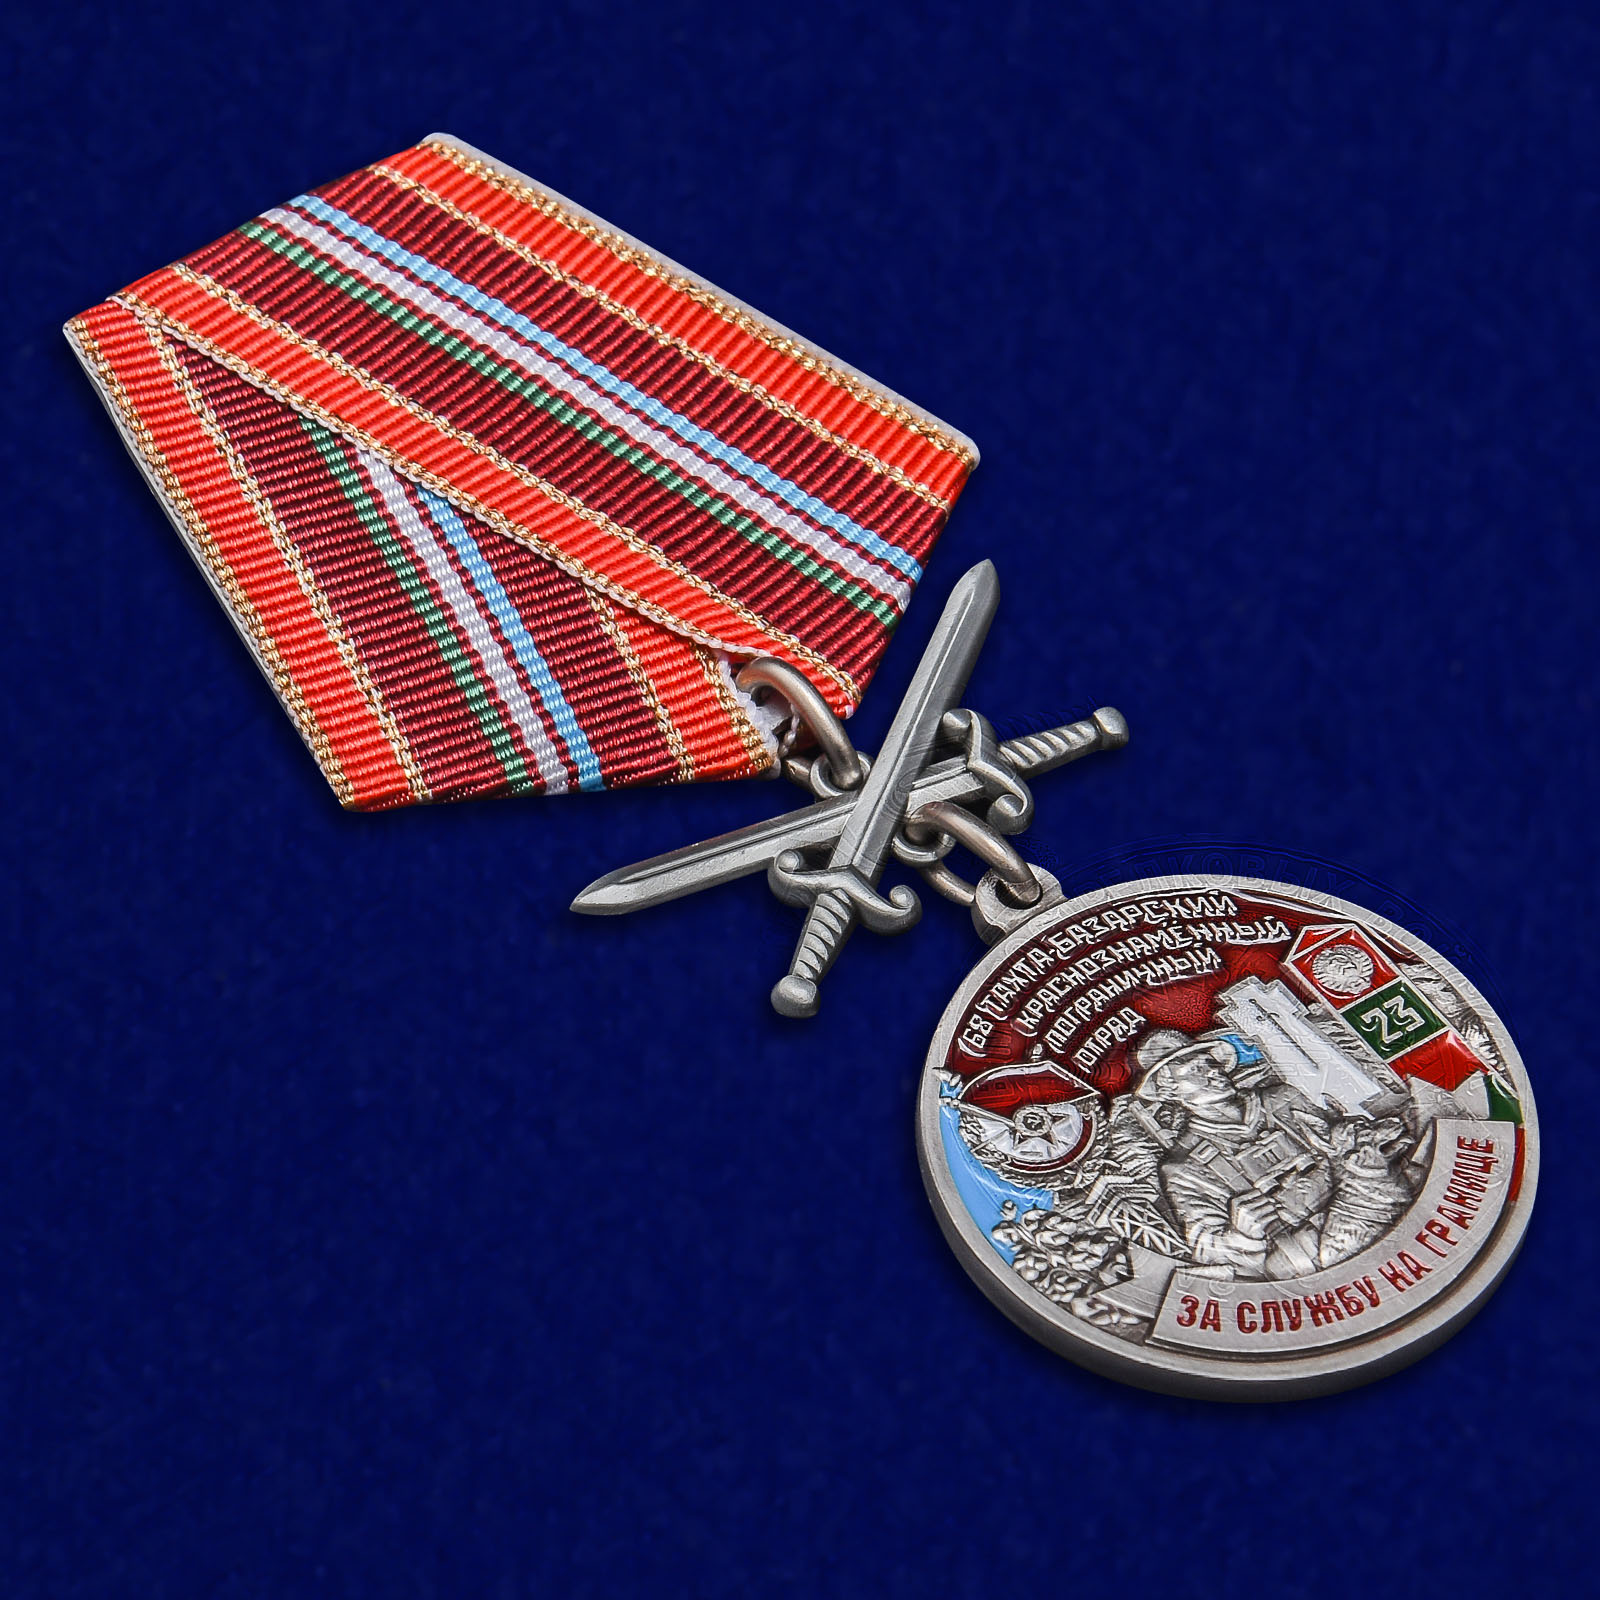 Медаль "За службу на границе" (68 Тахта-Базарский Пограничный отряд)